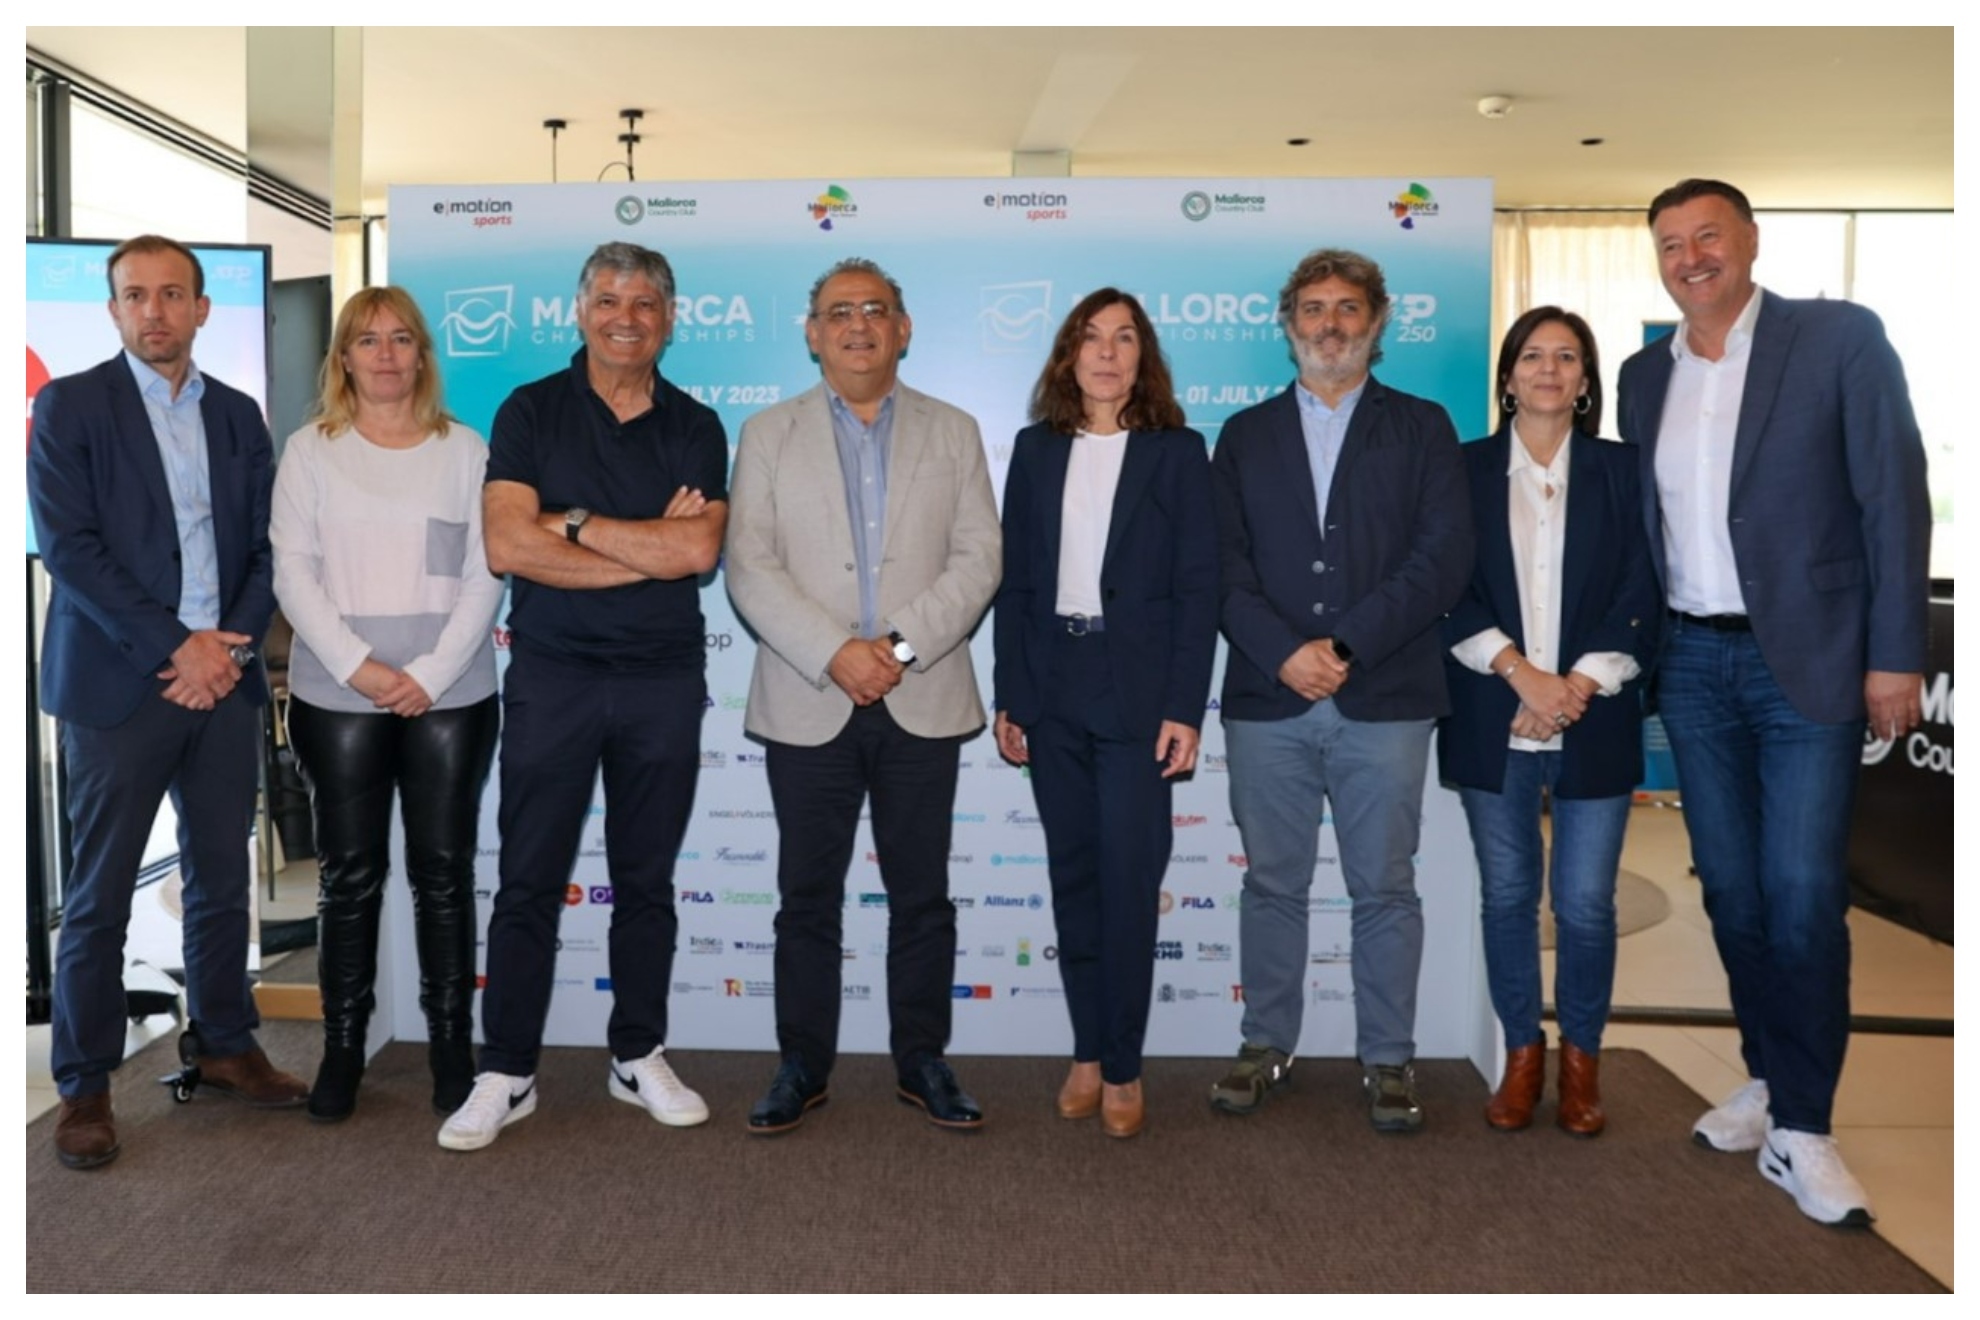 Toni Nadal y Edwin Weindorfer, CEO de emotion group, en la presentación del Mallorca Championships